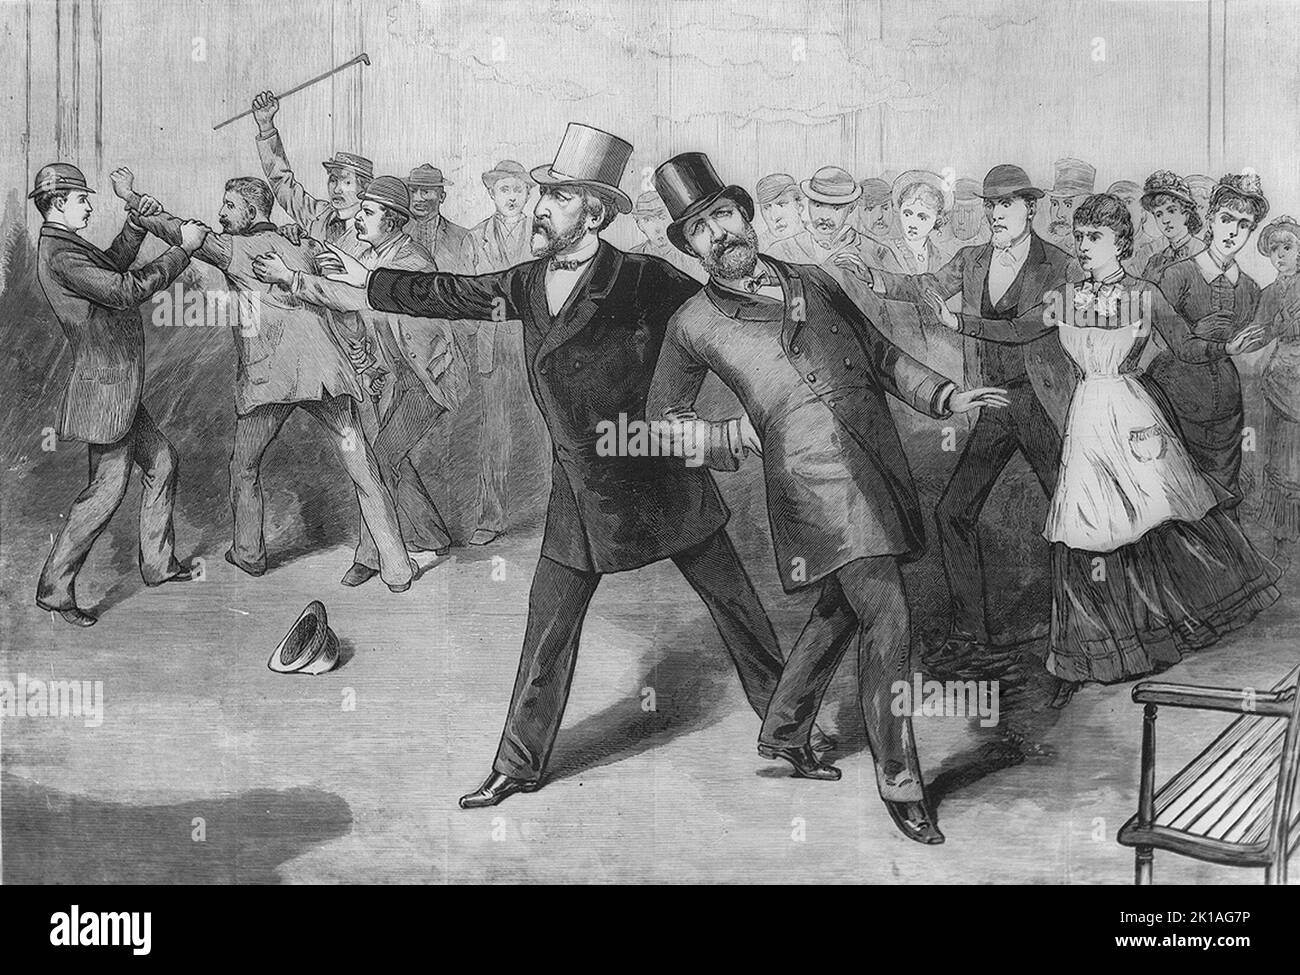 Die Tötung von Präsident James Garfield durch Charles Guiteau am 2. 1881. Juli. Garfield wurde nicht durch die Kugel getötet, sondern starb, wahrscheinlich an einer Sepsis, zwei Monate später, am 19. 1881. September. Stockfoto